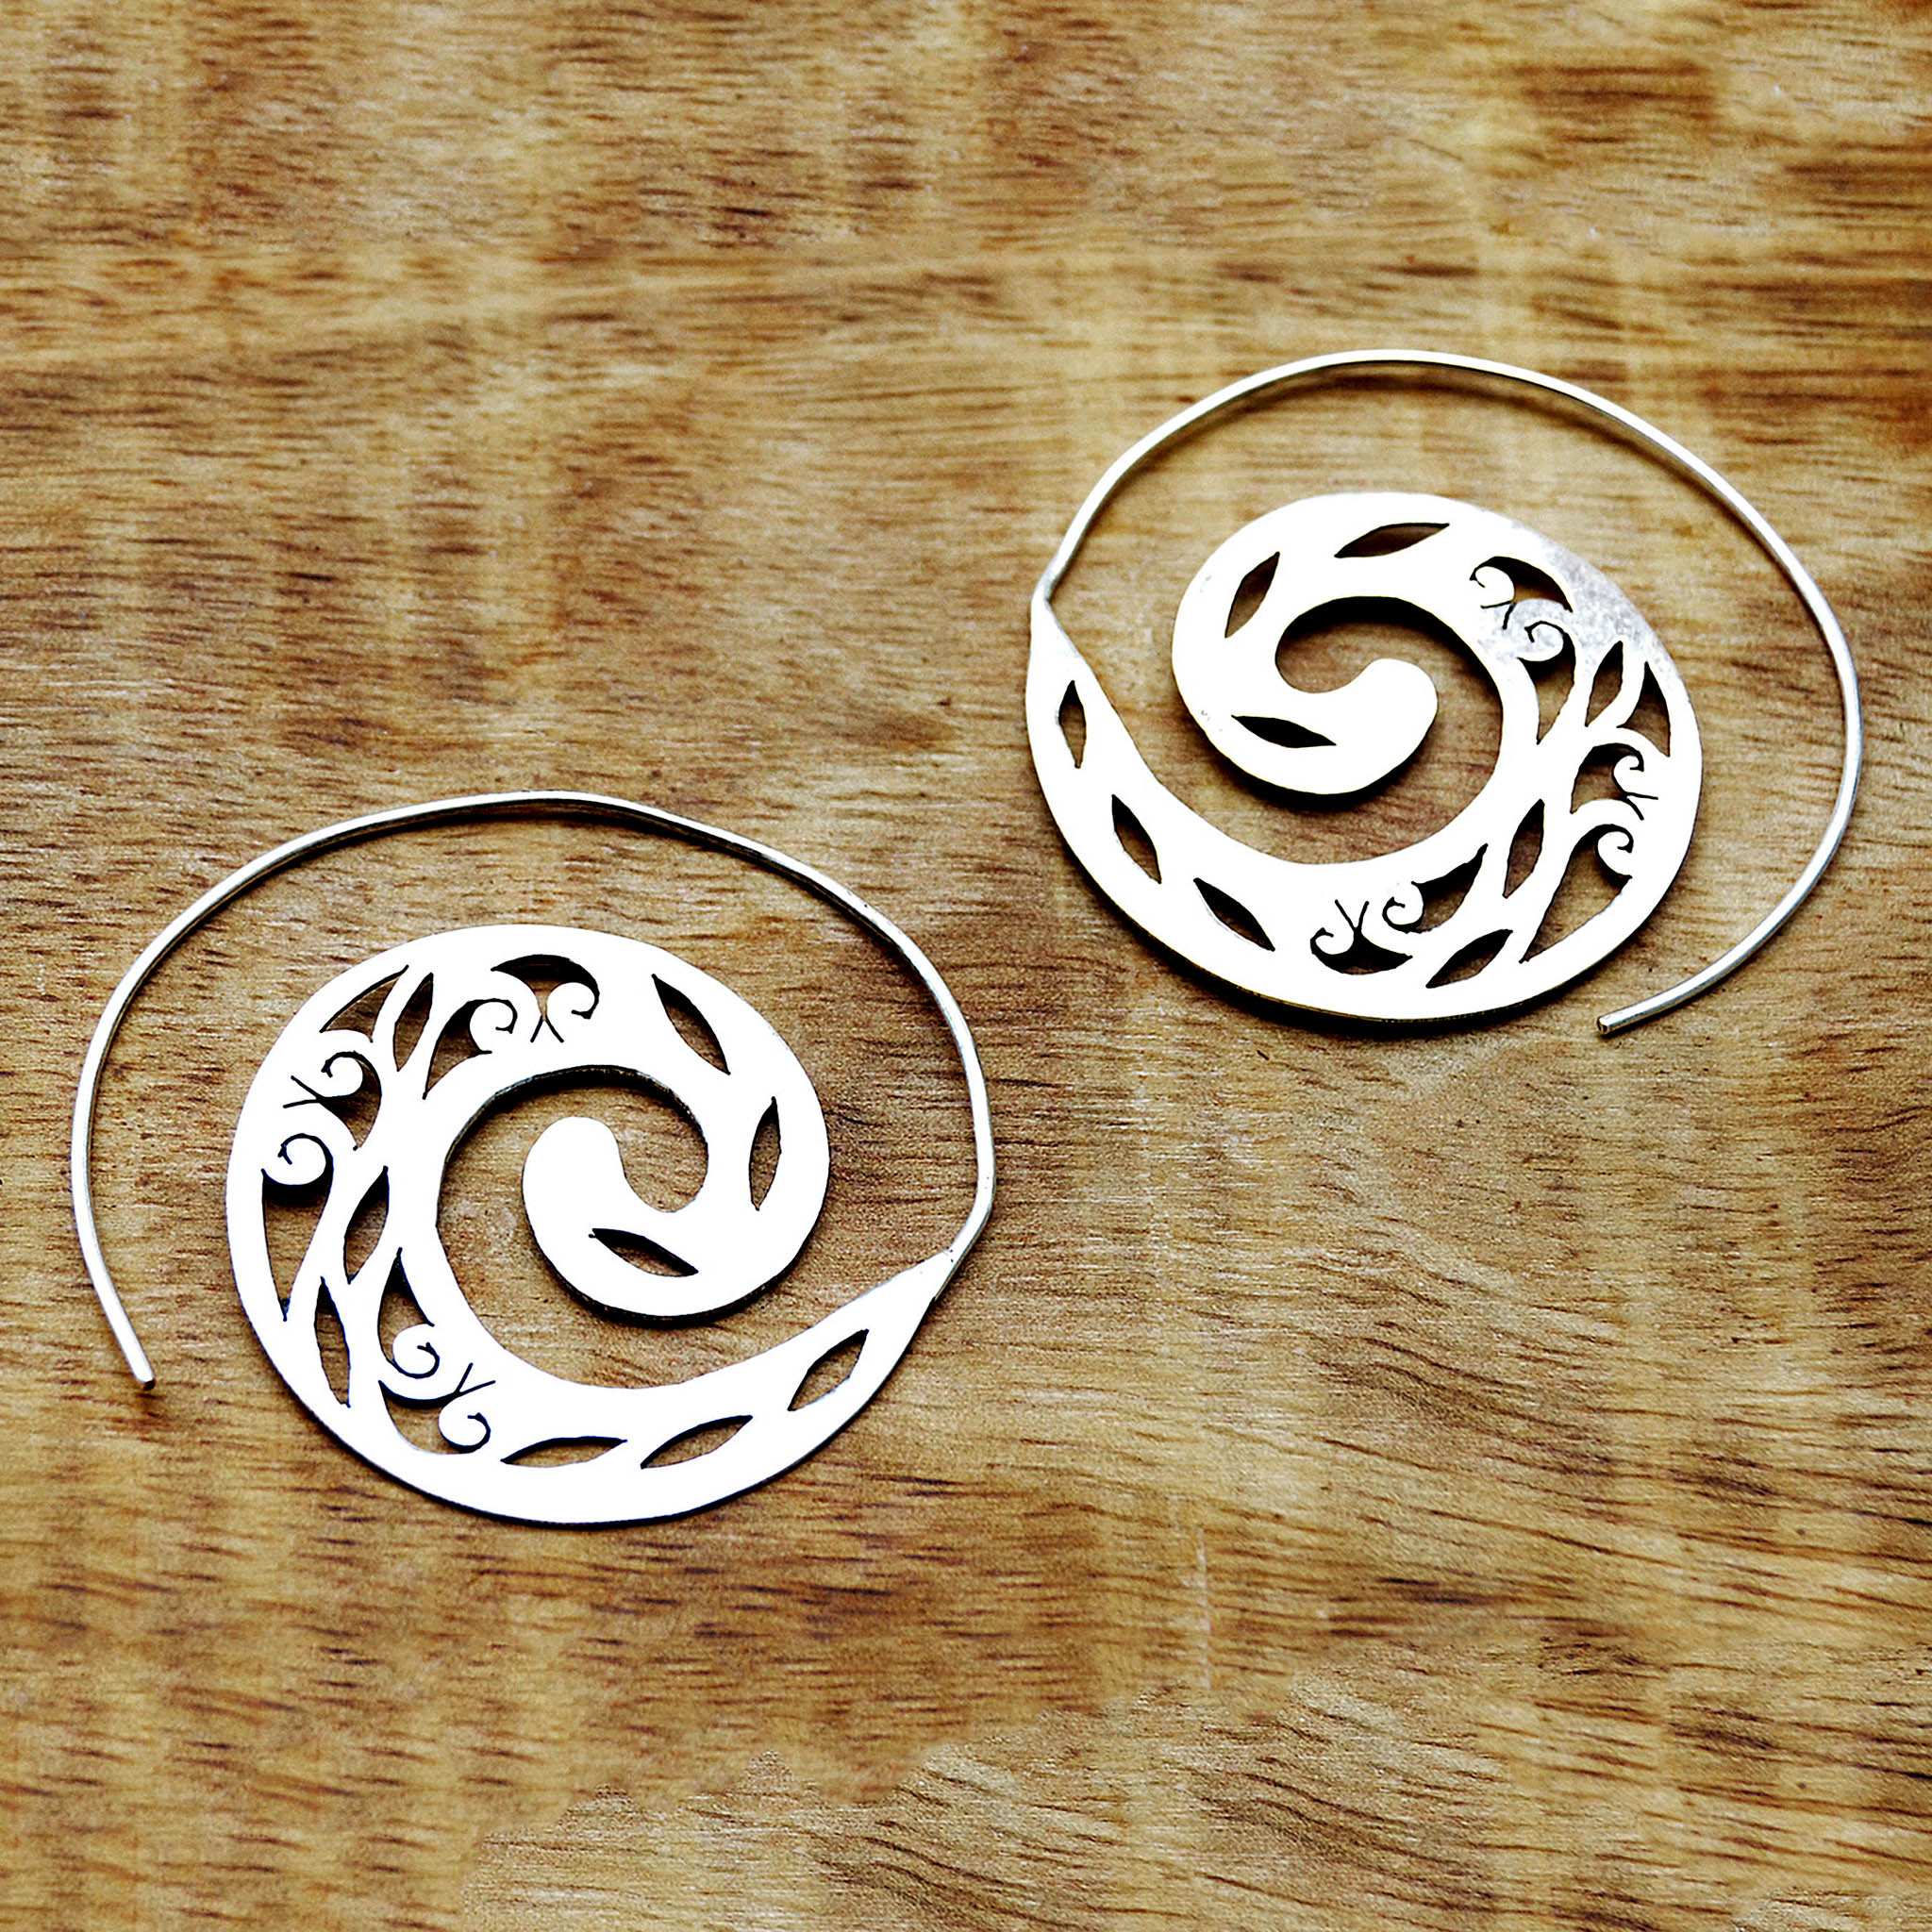 Hippie silver spiral hoop earrings